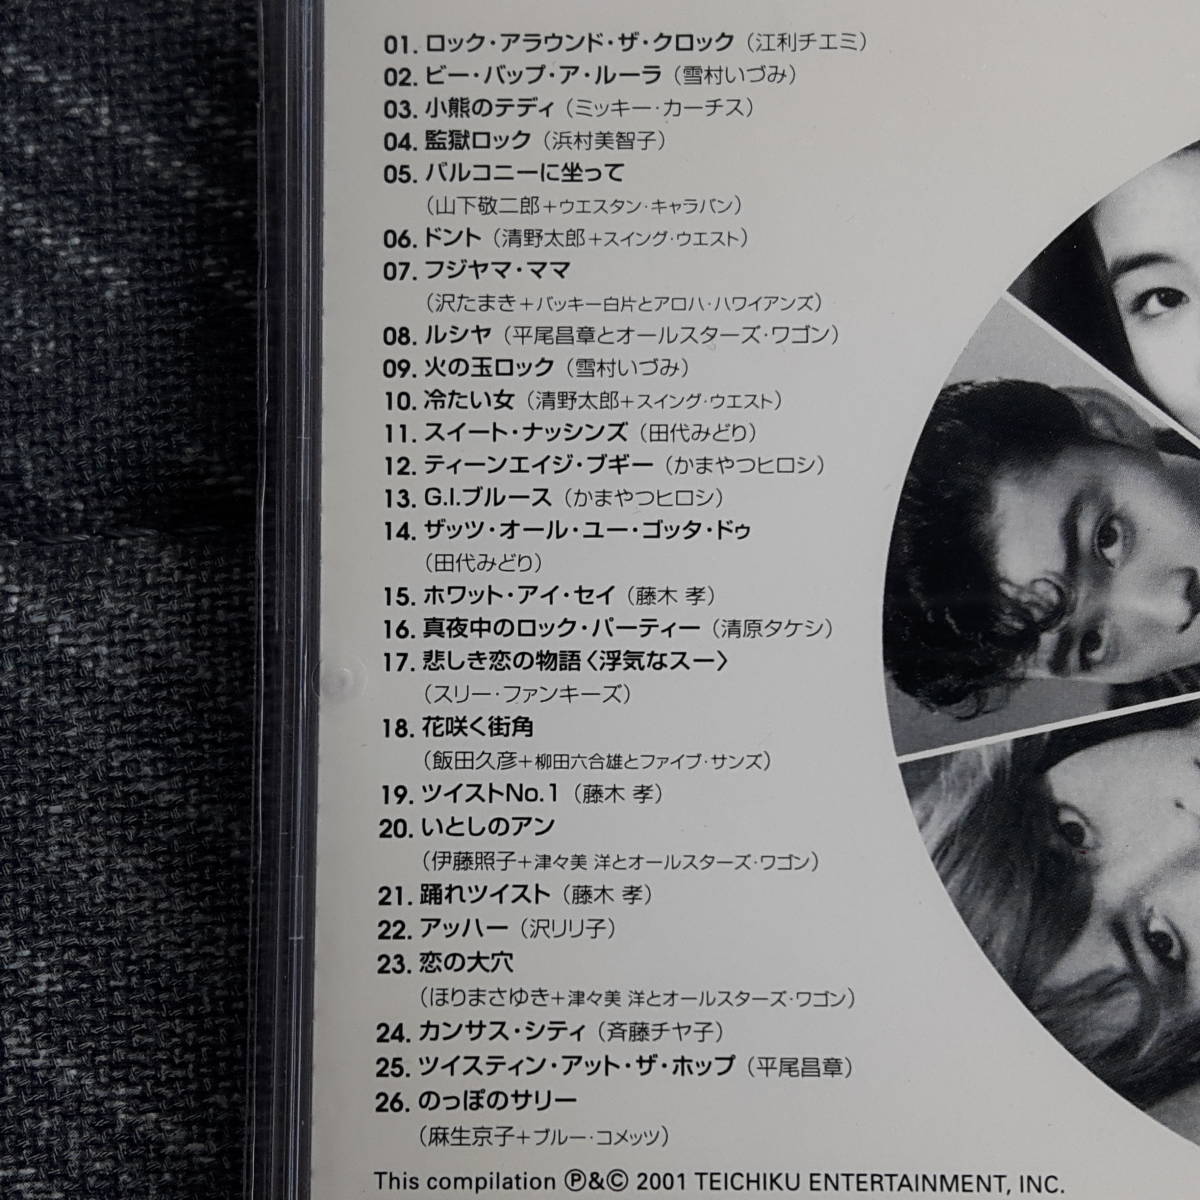  Tokyo свекла * антология CD альбом ROCKIN*DAYS 1955-1962 контри-рок рисовое поле плата ... крем soda черный Cat's tsu